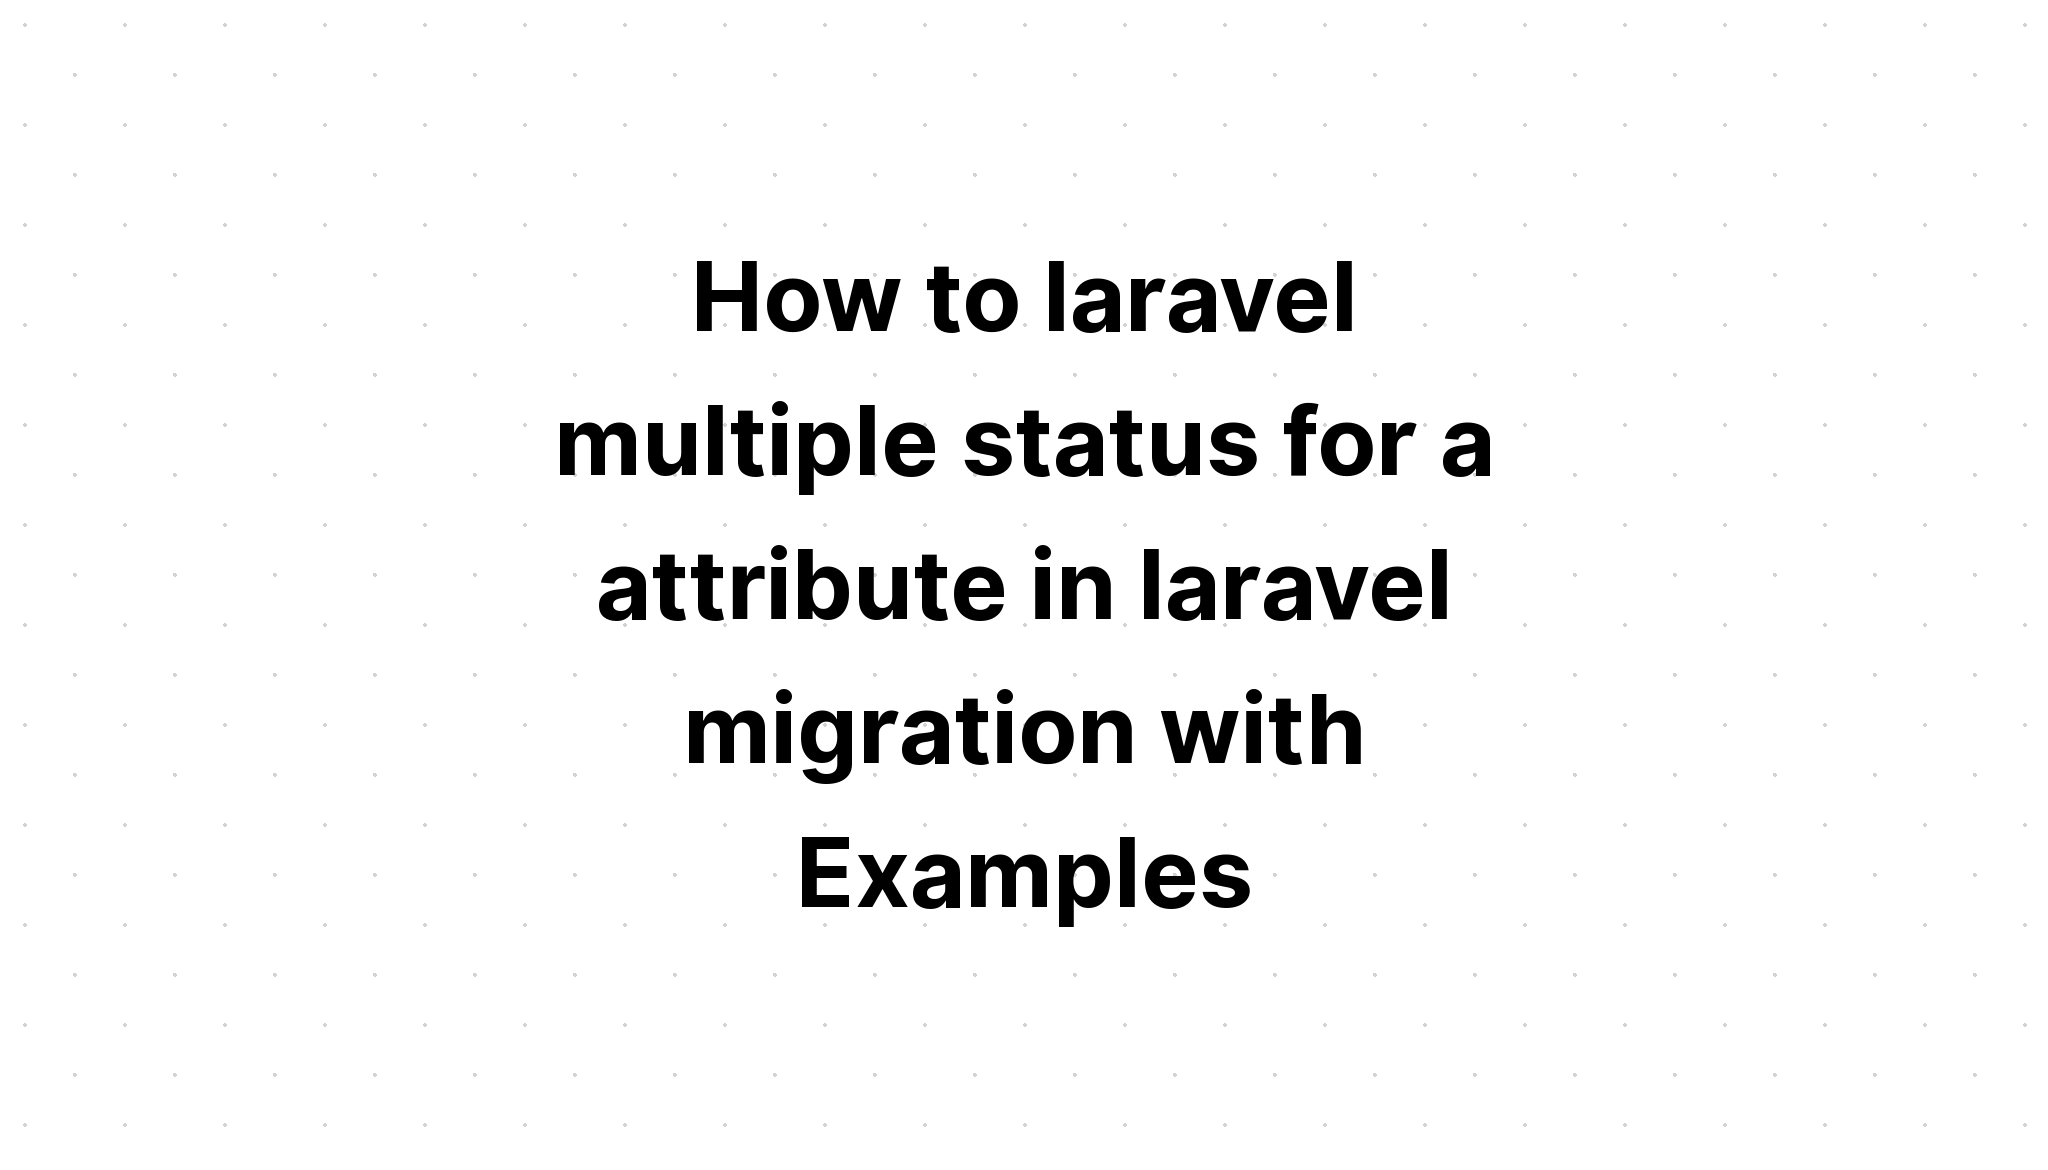 Cara laravel multi status untuk atribut di migrasi laravel dengan Contoh